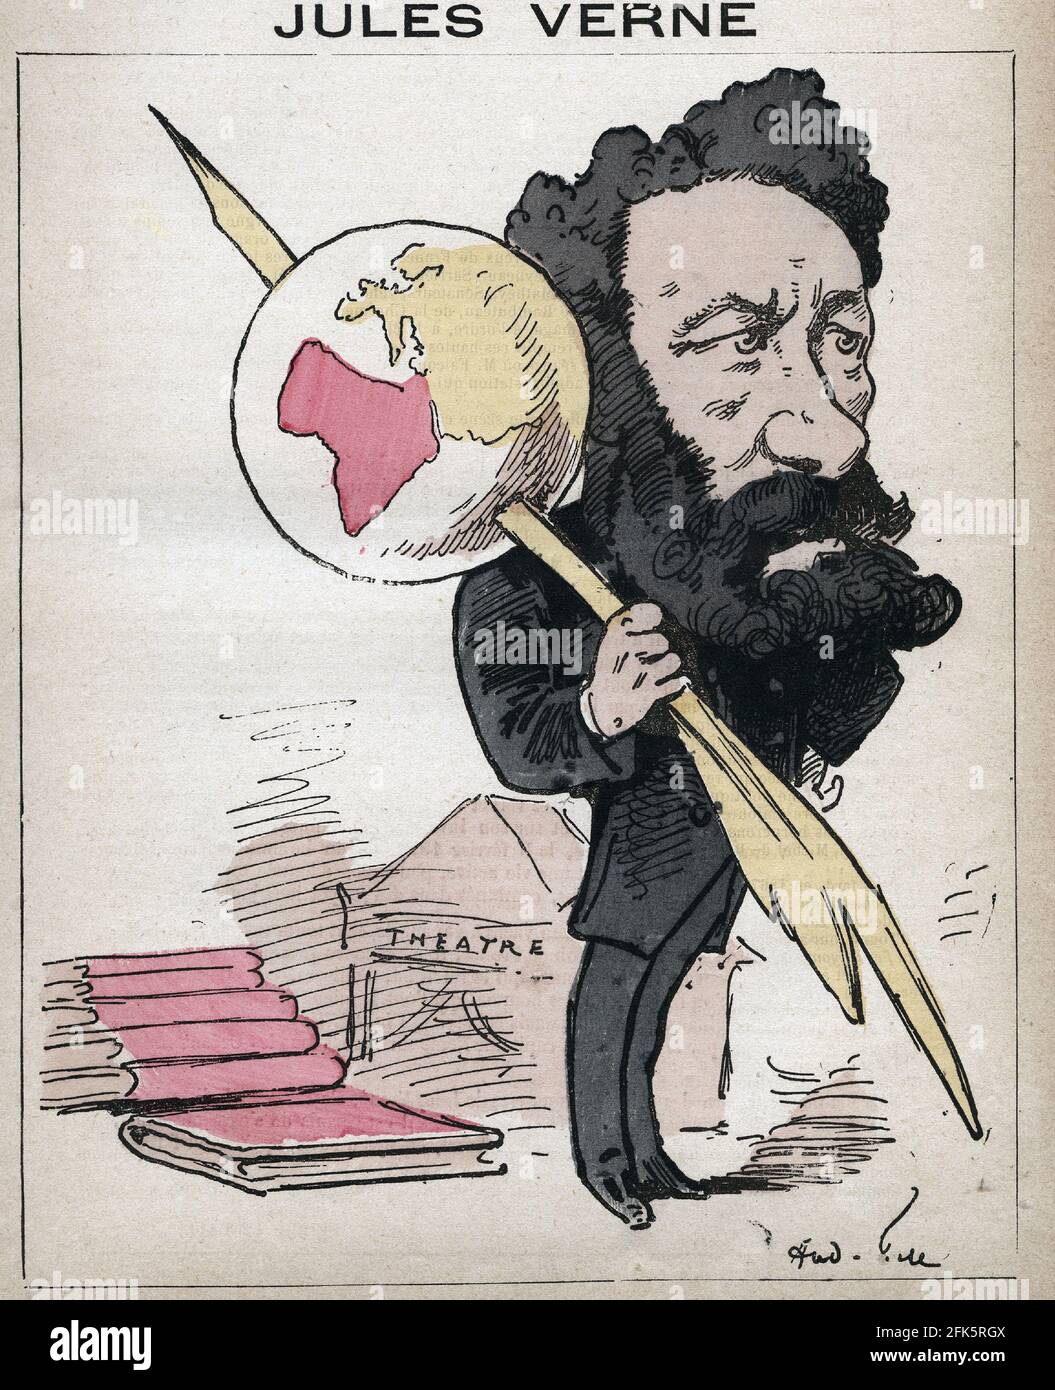 Jules Verne (1828-1905) de 'Les Hommes d'aujourd'hui' de Andre Gill Foto de stock